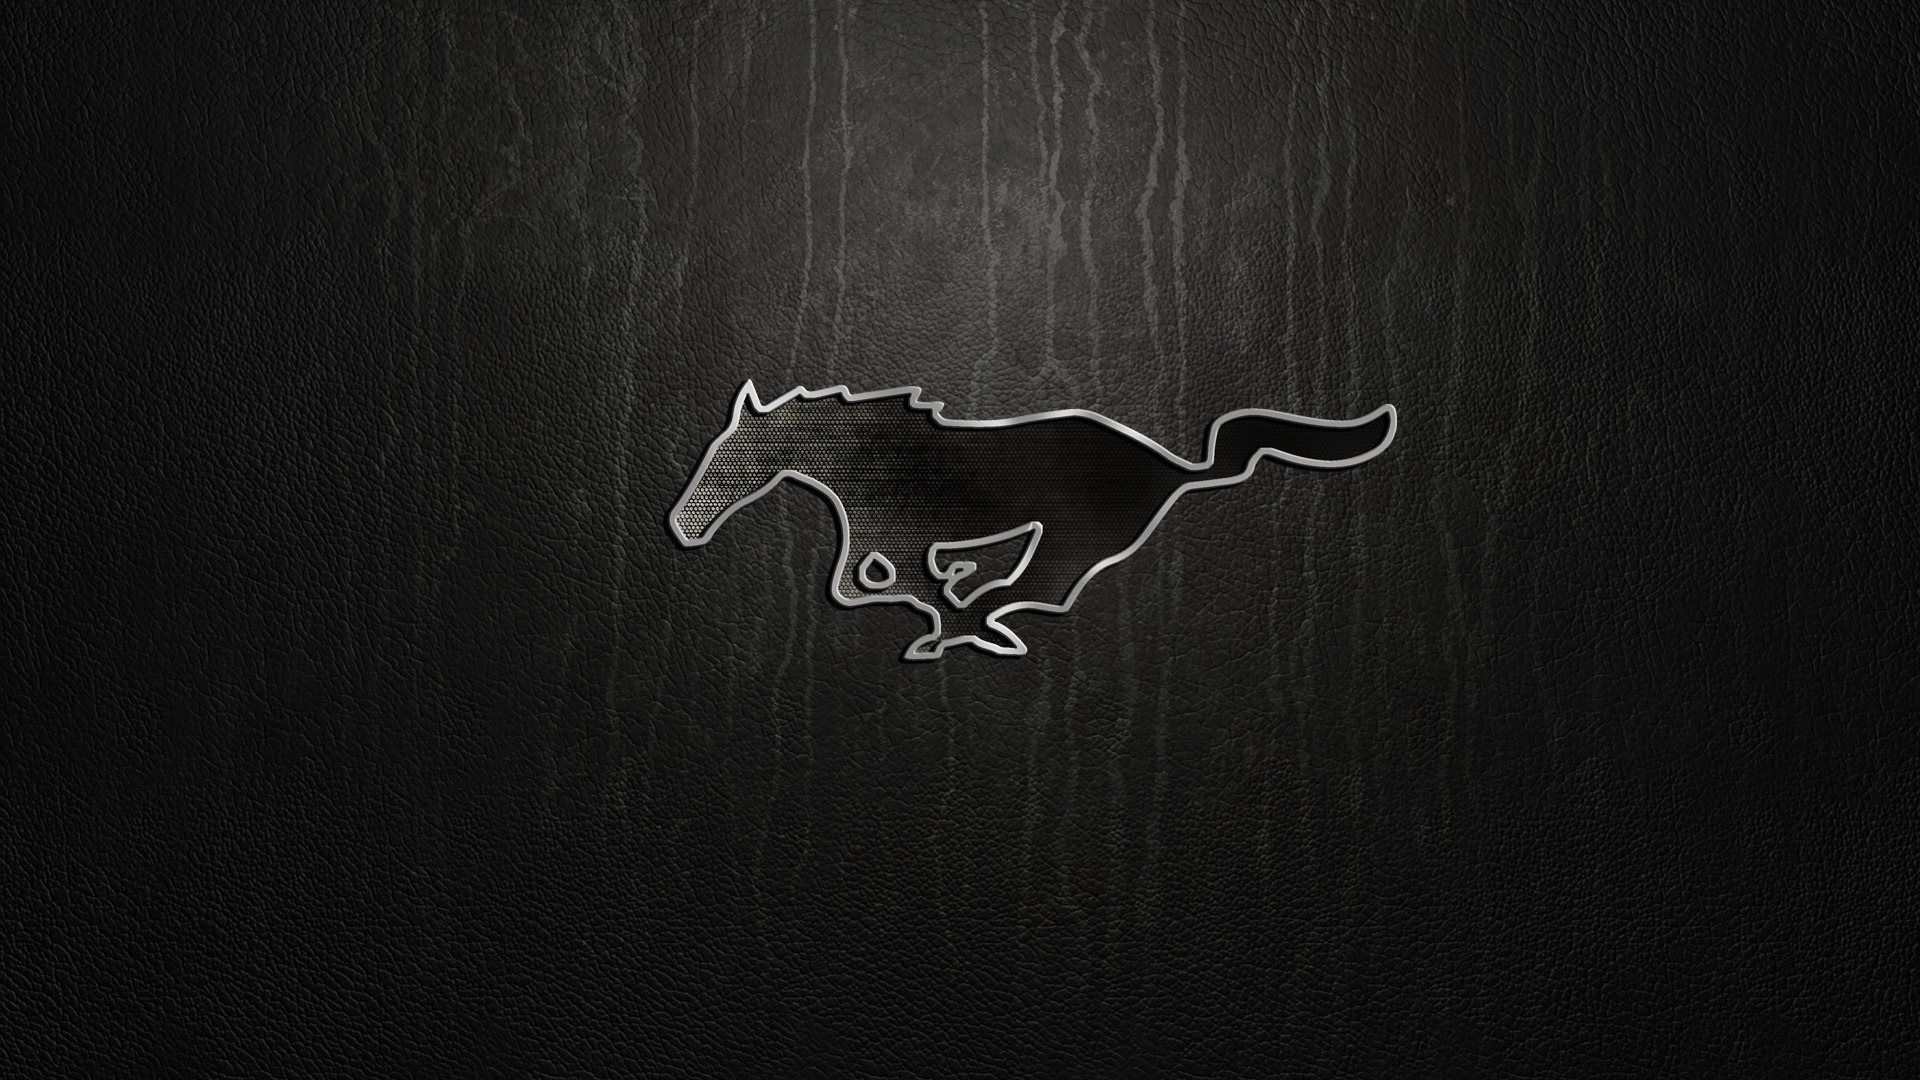 Hình nền Logo Mustang 1920x1080 # z05 1920 x 1080 px 623.08 KB